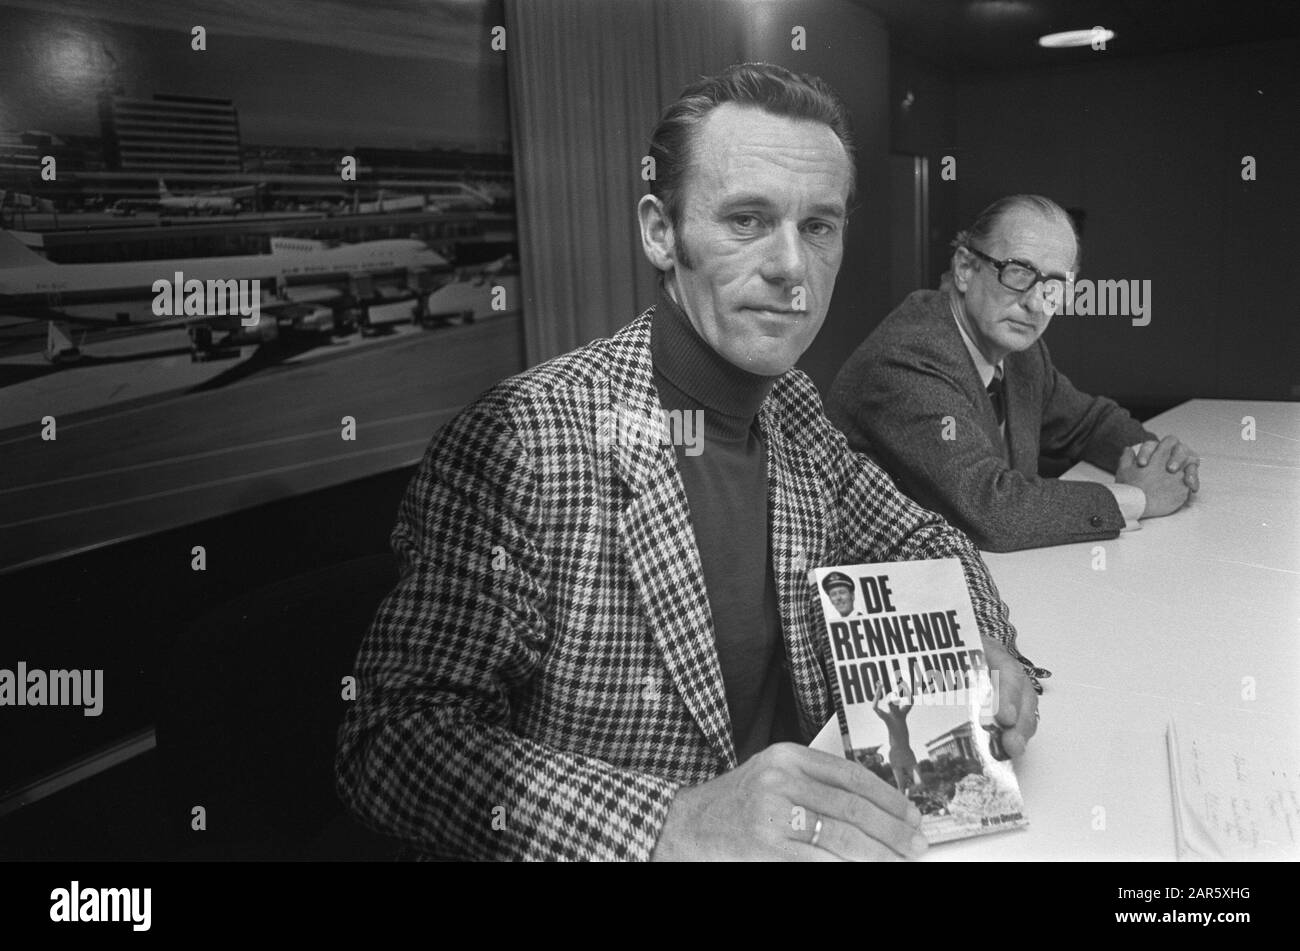 KLM-Kapitän A. van Ommen mit seinem Buch De Rennende Hollander während der Pressekonferenz Datum: 26. Januar 1973 Schlüsselwörter: Bücher, Kapitäne, Pressekonferenzen persönlicher Name: A. van Ommen Stockfoto